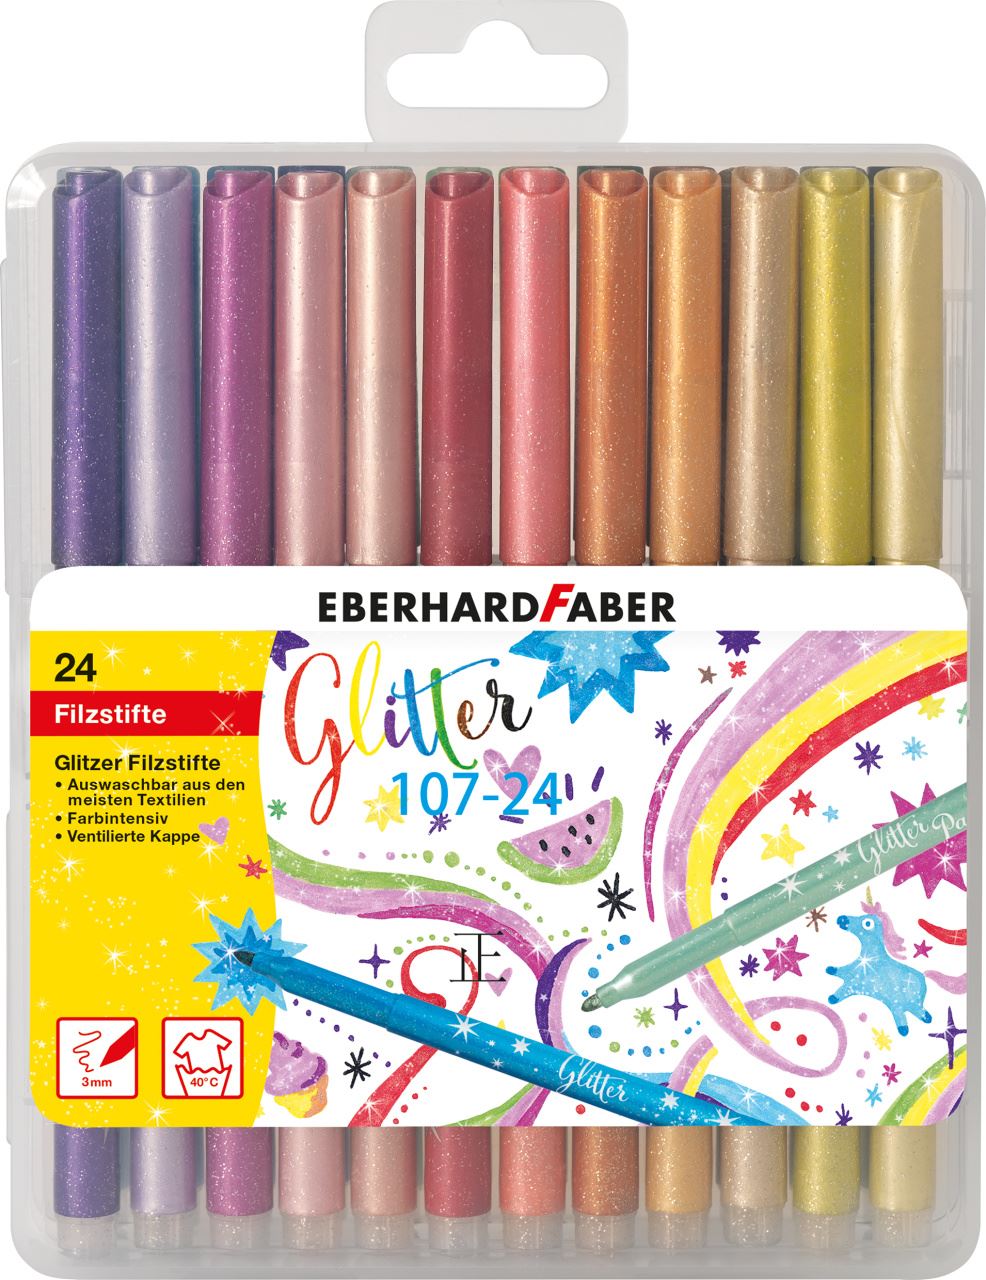 Eberhard-Faber - Glitzer Filzstifte, Aufbewahrungsbox mit 24 Farben